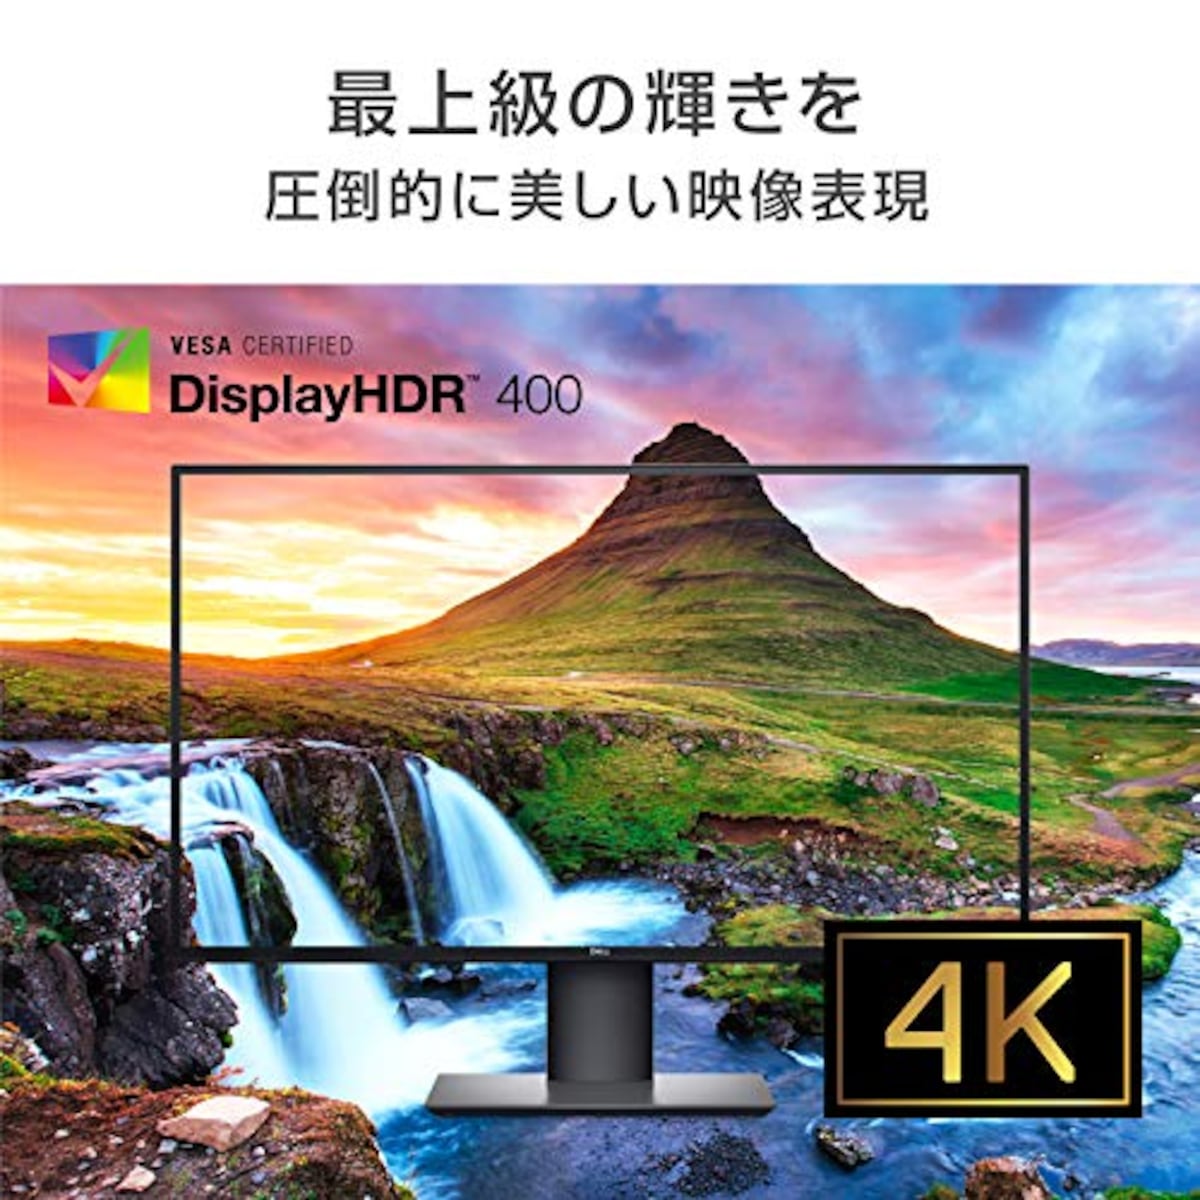  【セット買い】Dell 4Kモニター 27インチ U2720QM(3年間無輝点交換保証付/広視野角/HDR/IPS非光沢/フリッカーフリー/USB Type-C,DP,HDMI/高さ調整/回転) & プロフェッショナルステレオサウンドバー AE515M画像3 